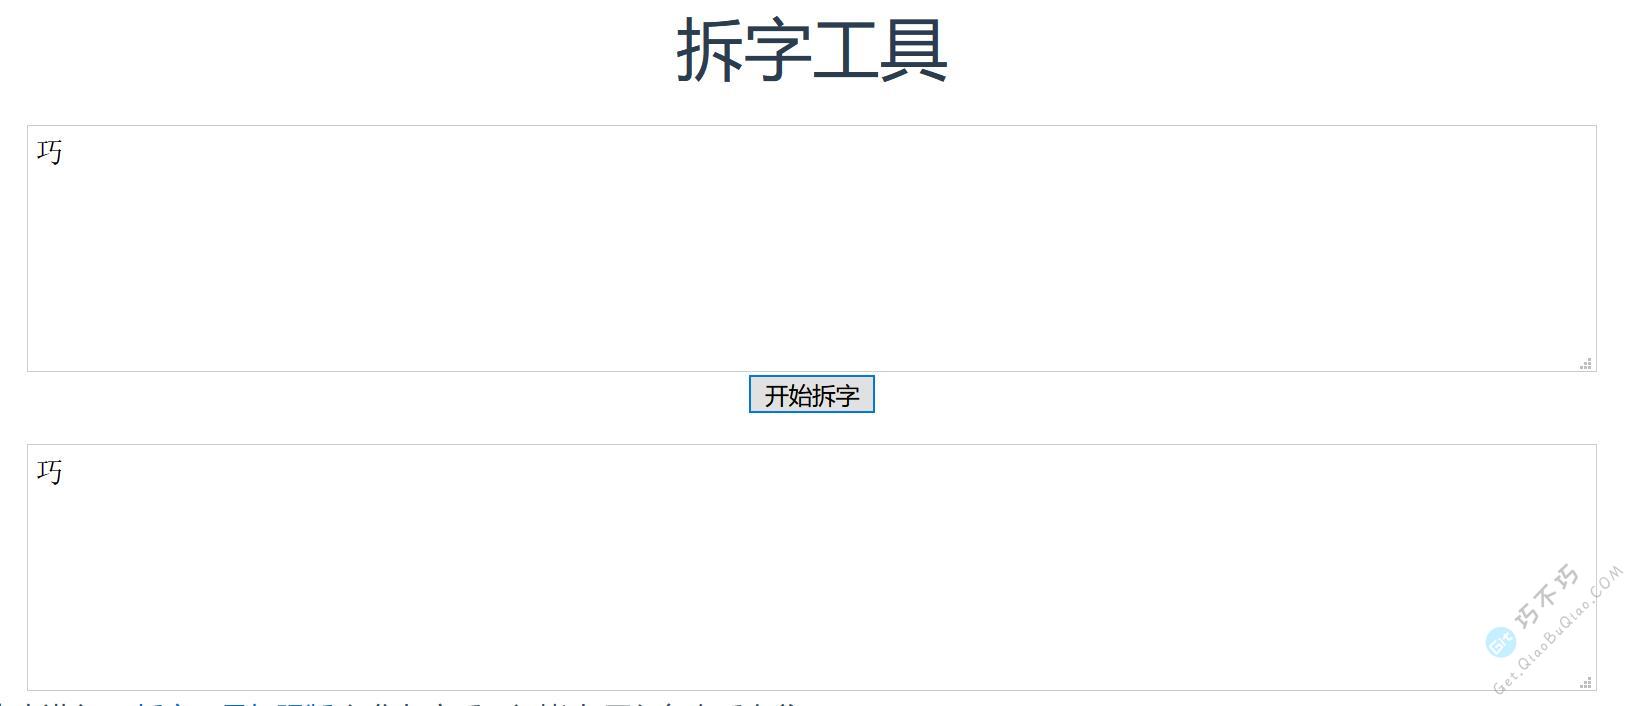 试了很多，这是最靠谱的一个在线汉字拆解网站，制作分体汉字时很管用